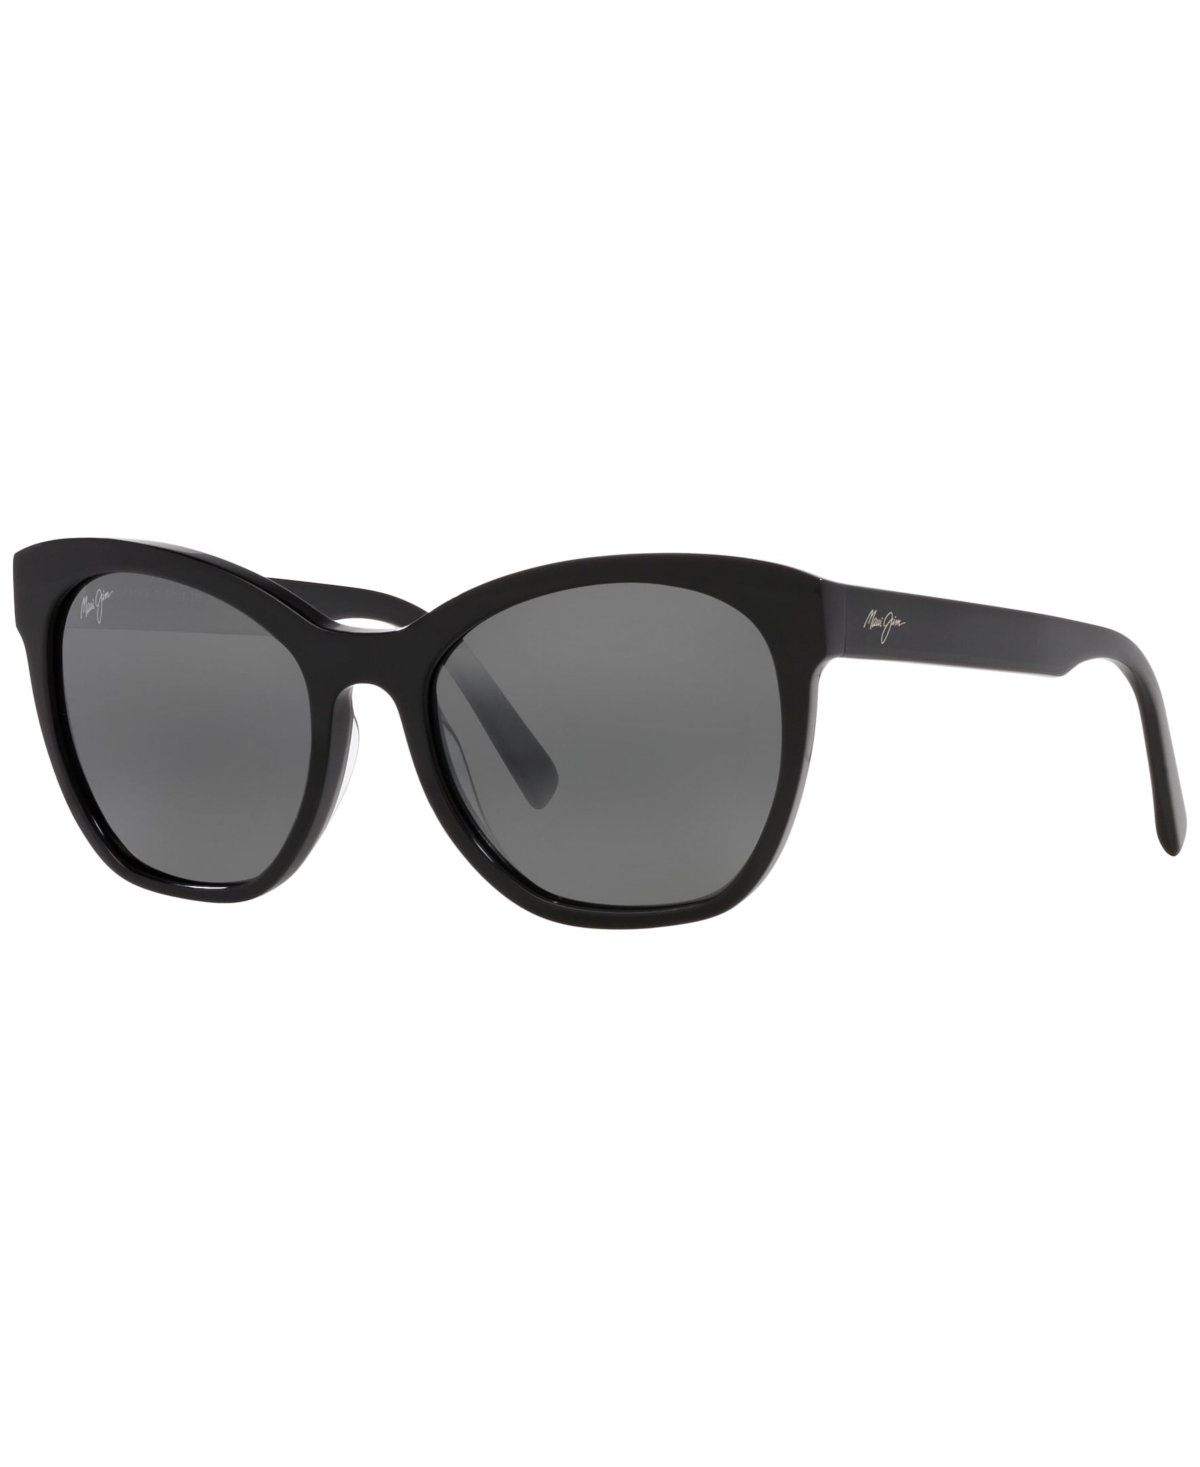 Maui Jim Women's Polarized Sunglasses, Mj00069356-x 56 In Black Shiny